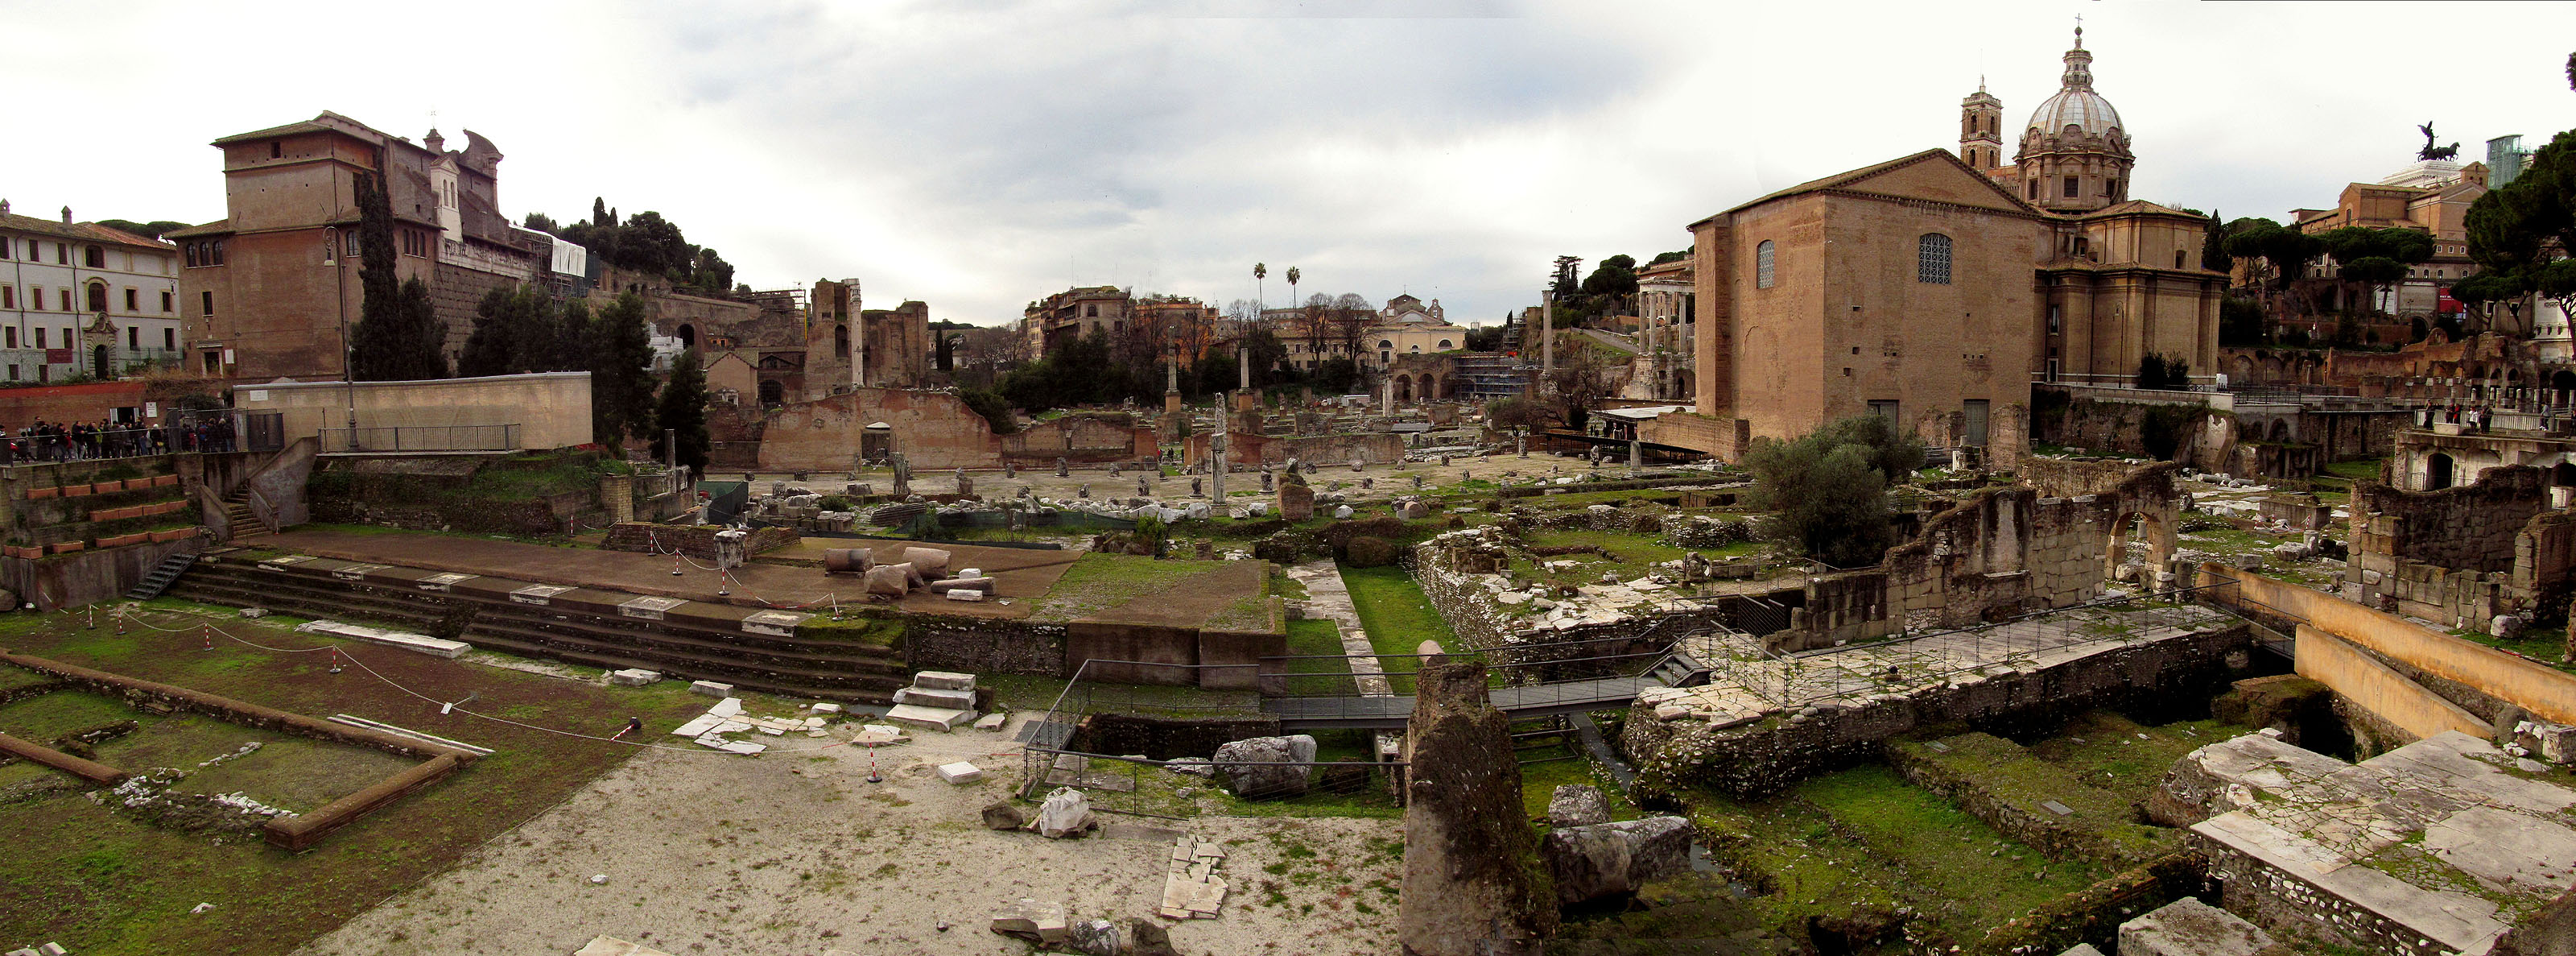 Via dei Fori Imperiali, hlavní vykopávky v Římě.